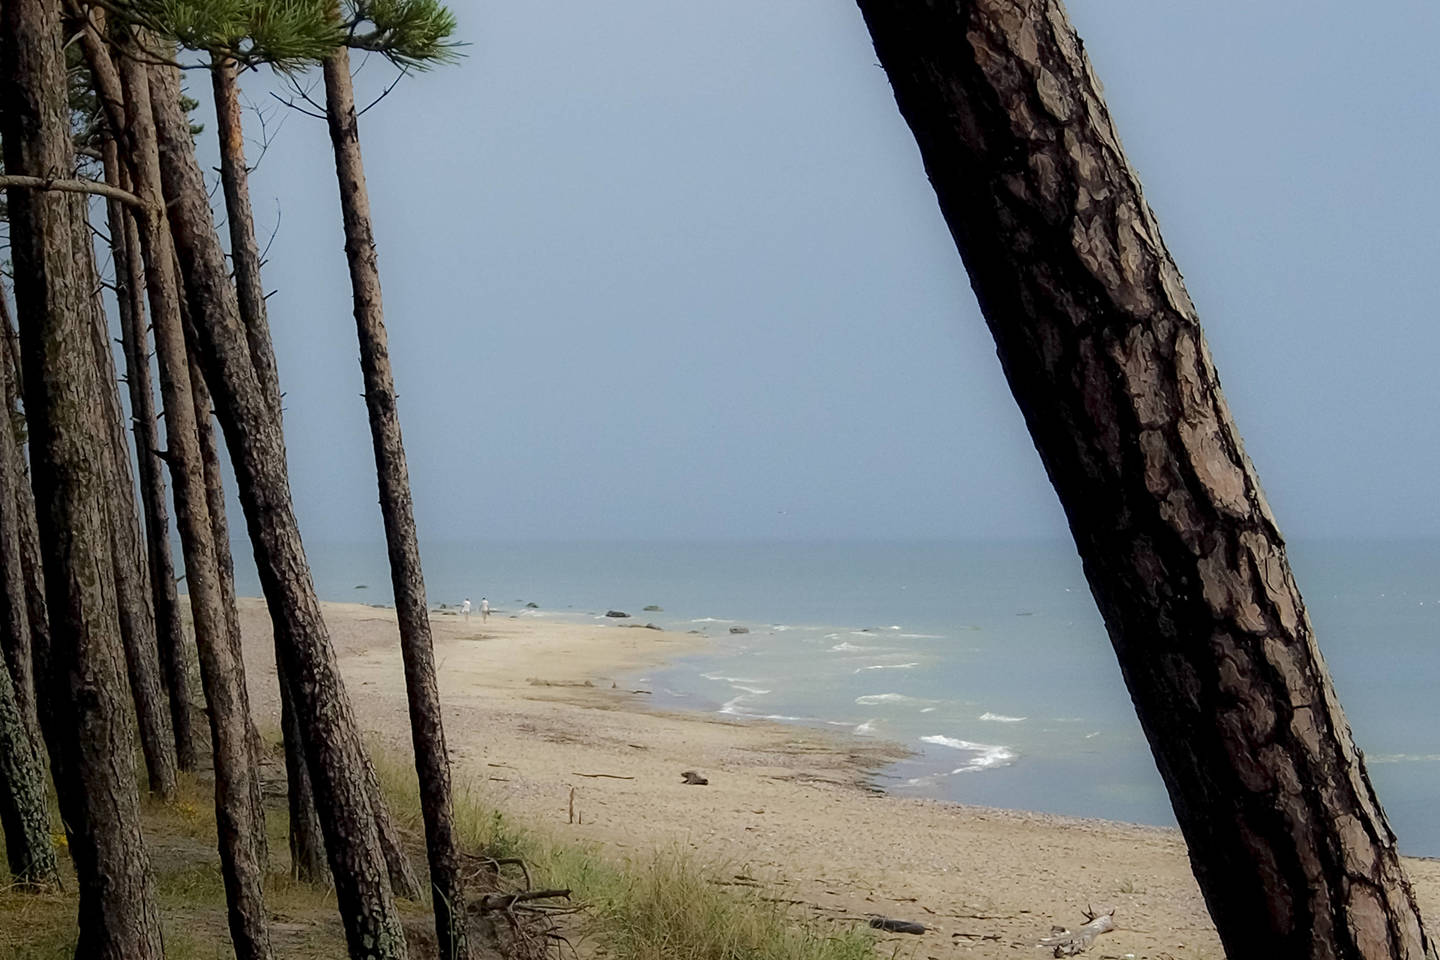  Latvijoje namas ant jūros kranto pripažintas laivu.<br> V. Ščiavinsko asociatyvi nuotr.